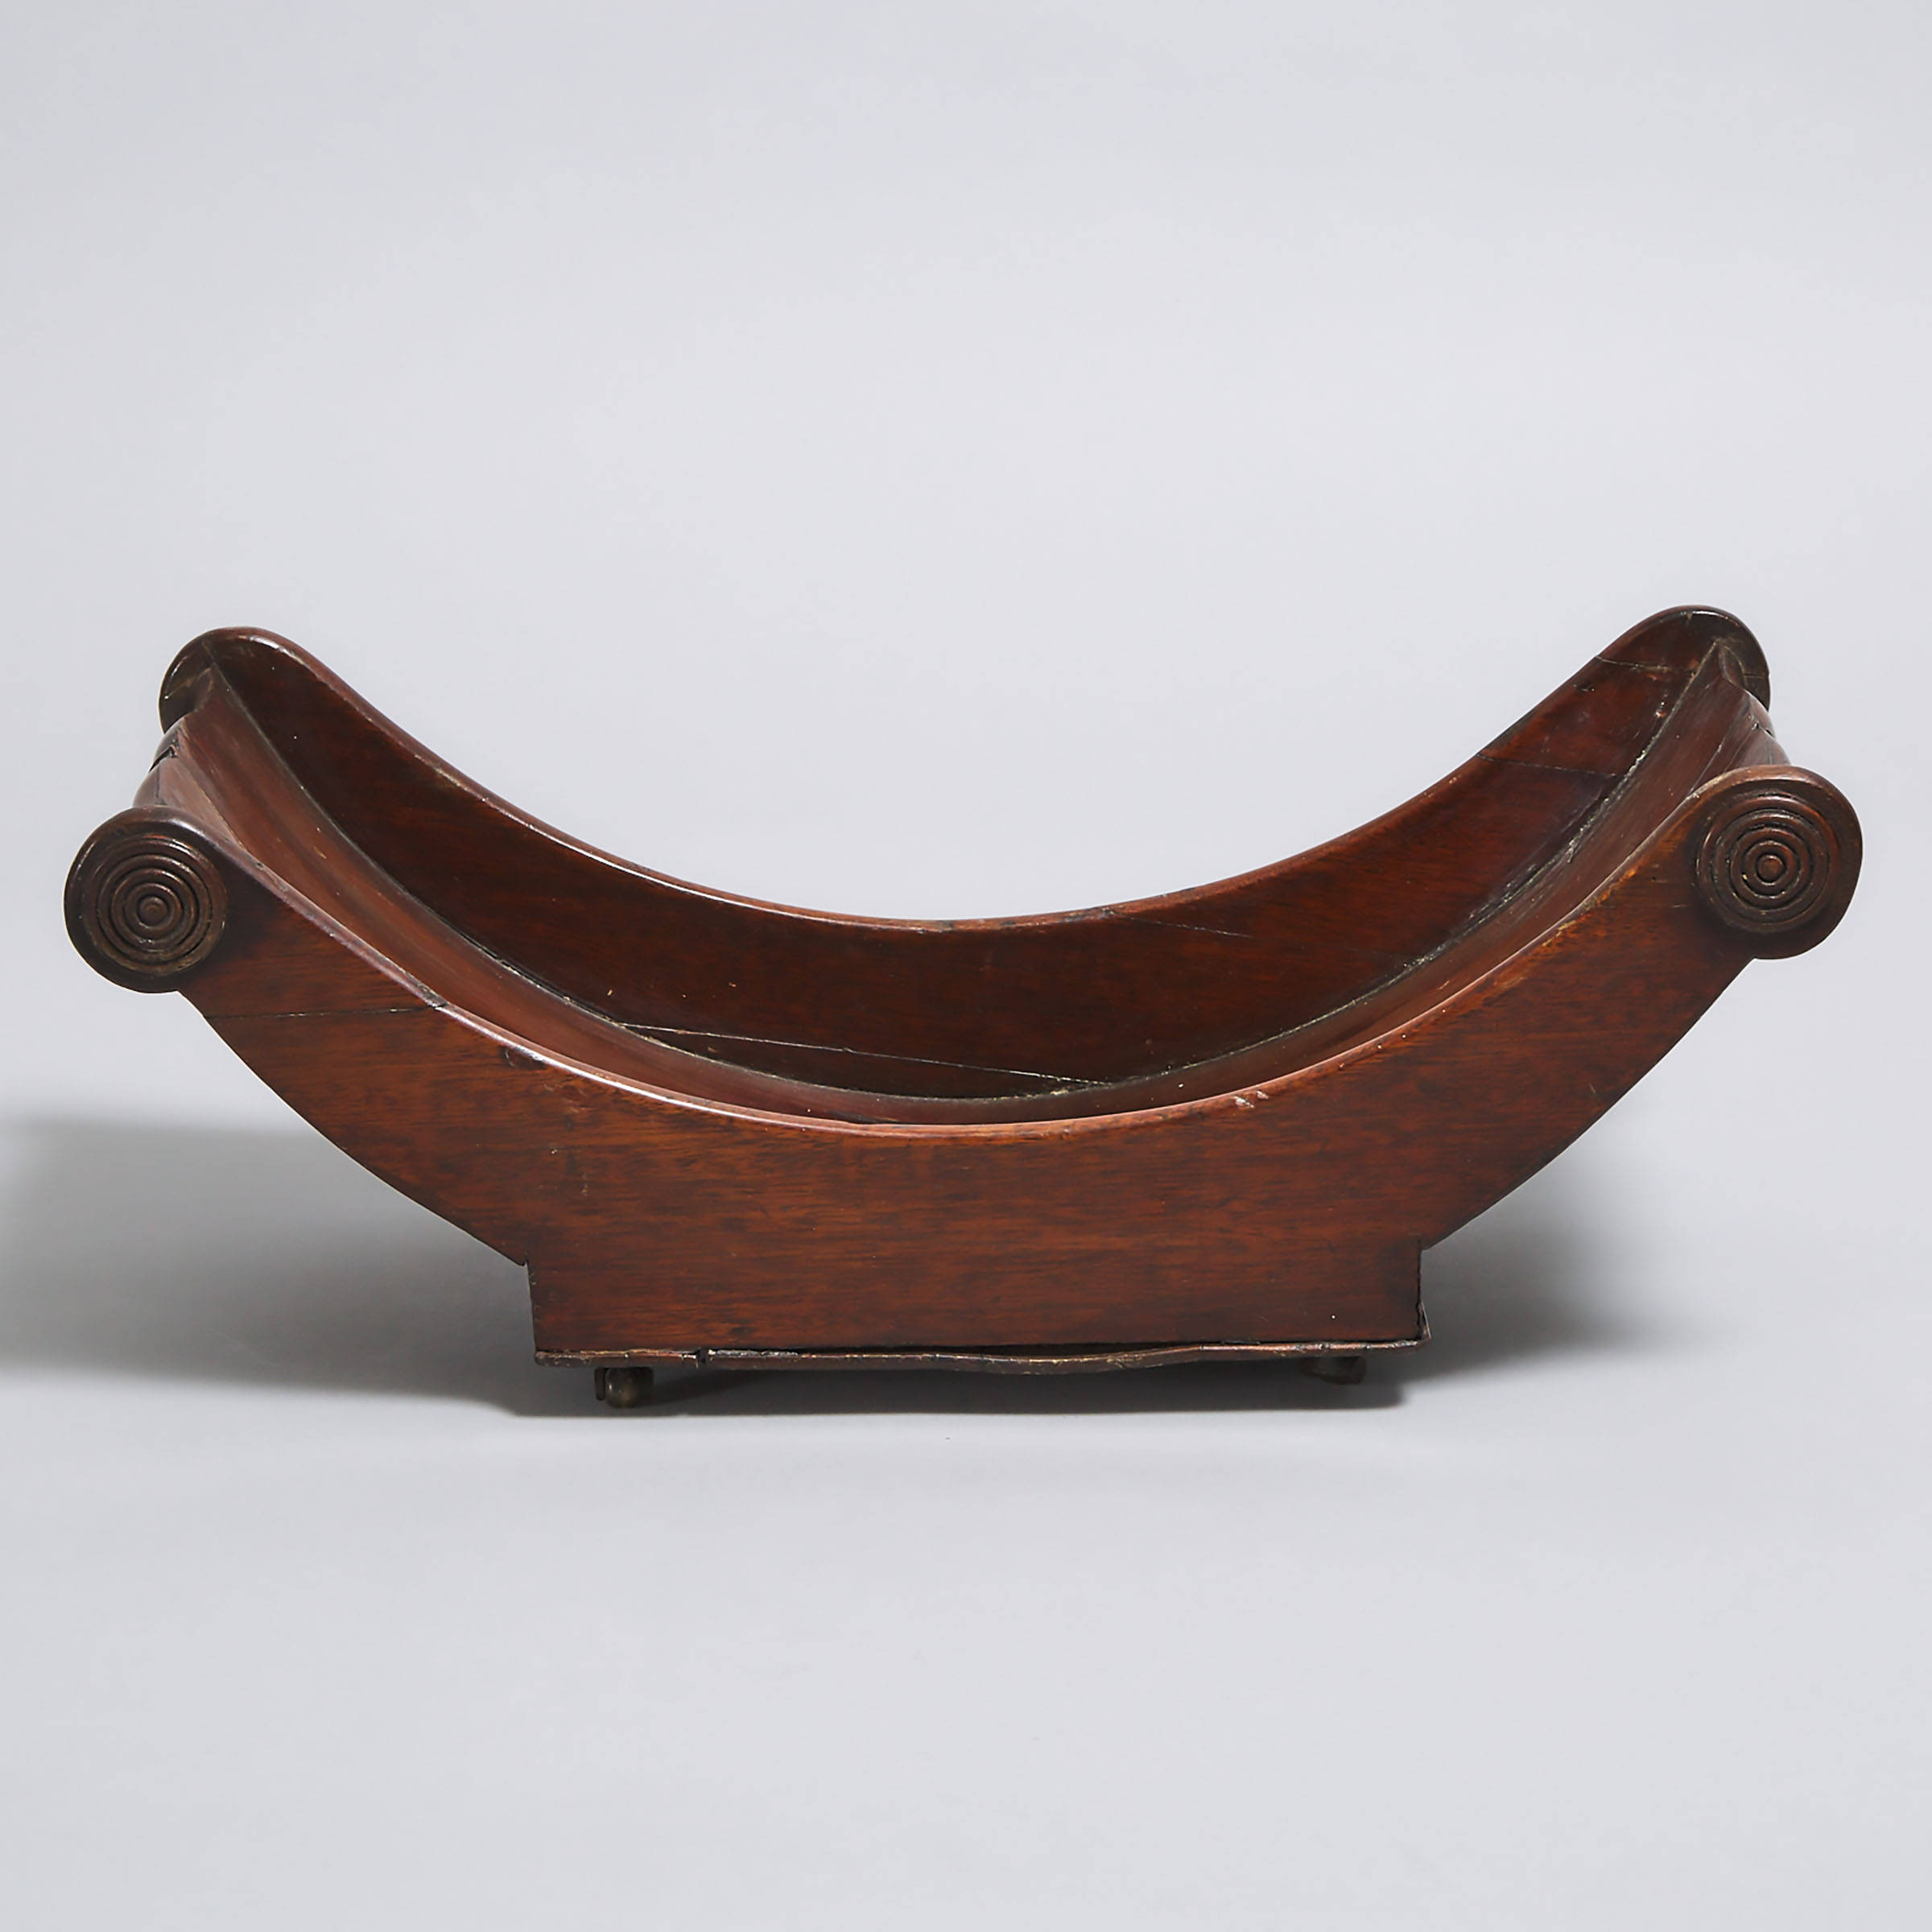 William IV Mahogany Boat-Form Cheese Coaster, early 19th century